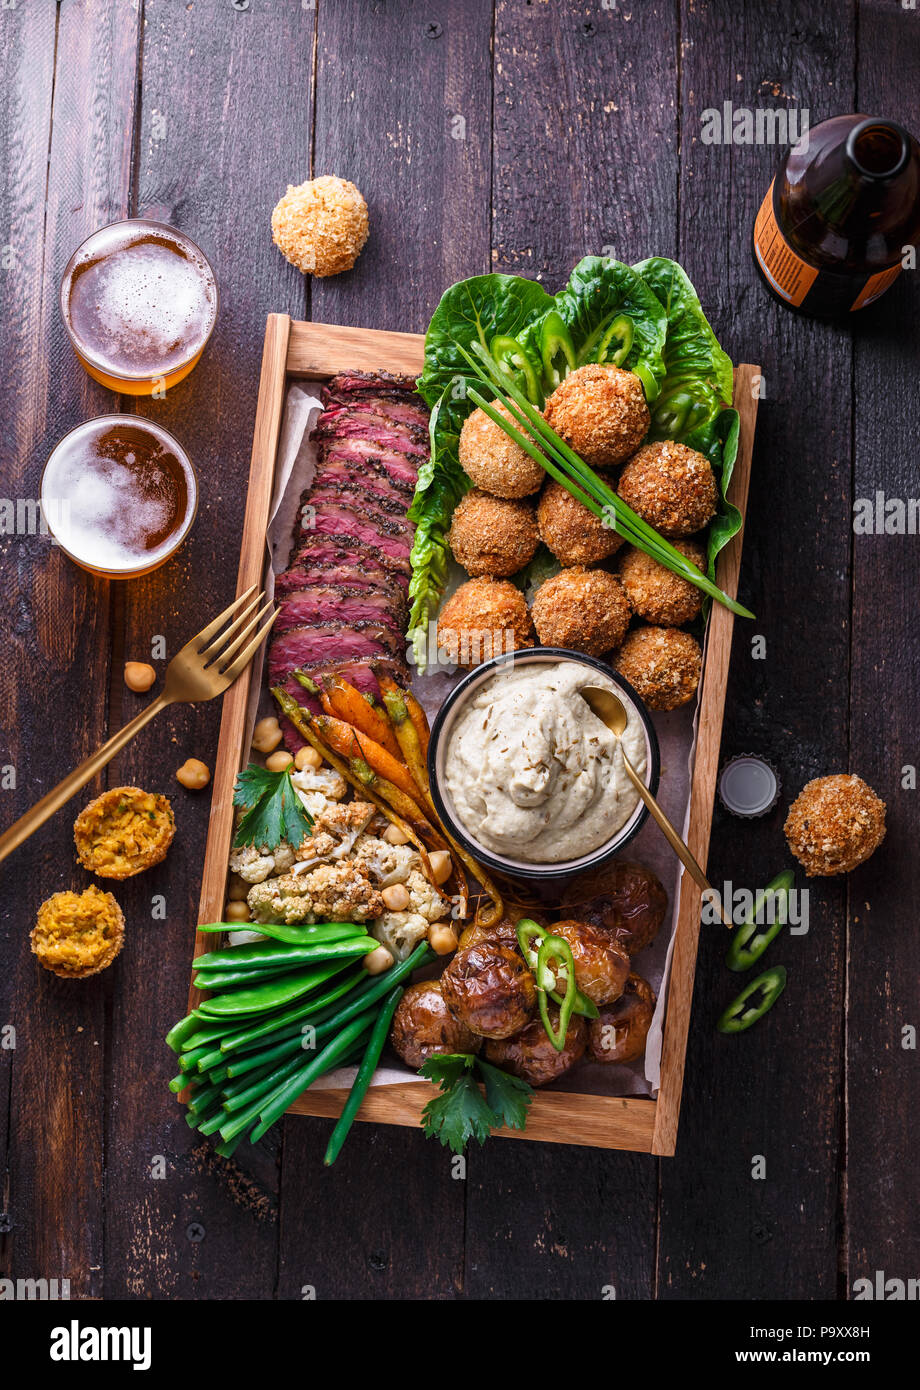 Un assortiment de plats du Moyen-Orient : falafel, viande, pomme de terre, chou-fleur et babaghanoush Banque D'Images